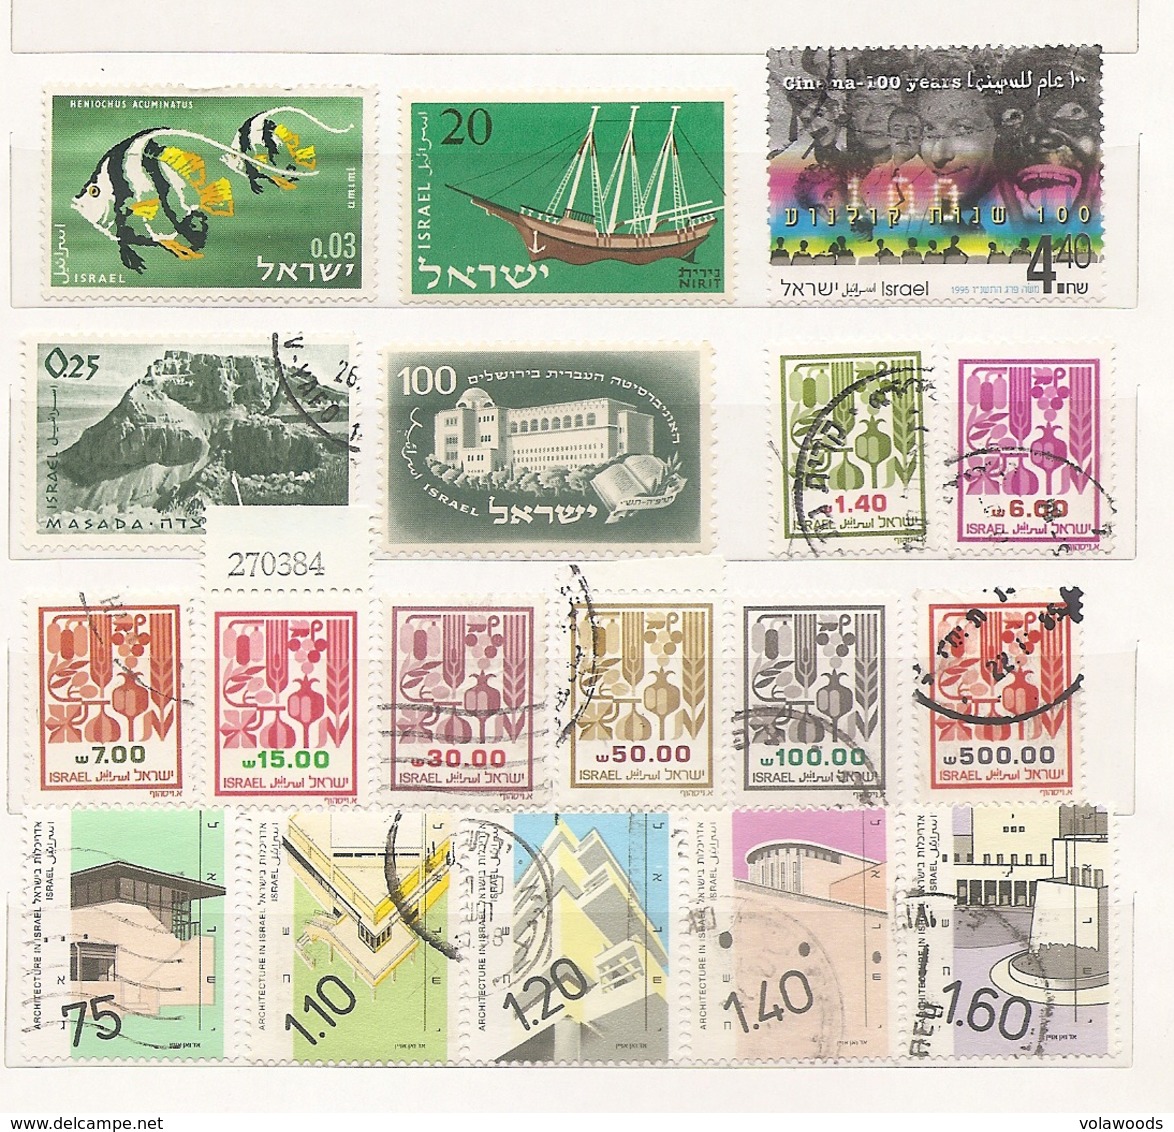 Israele - lotto di 280 francobolli usati tutti diversi anche in serie complete - senza album!!!!!!!!